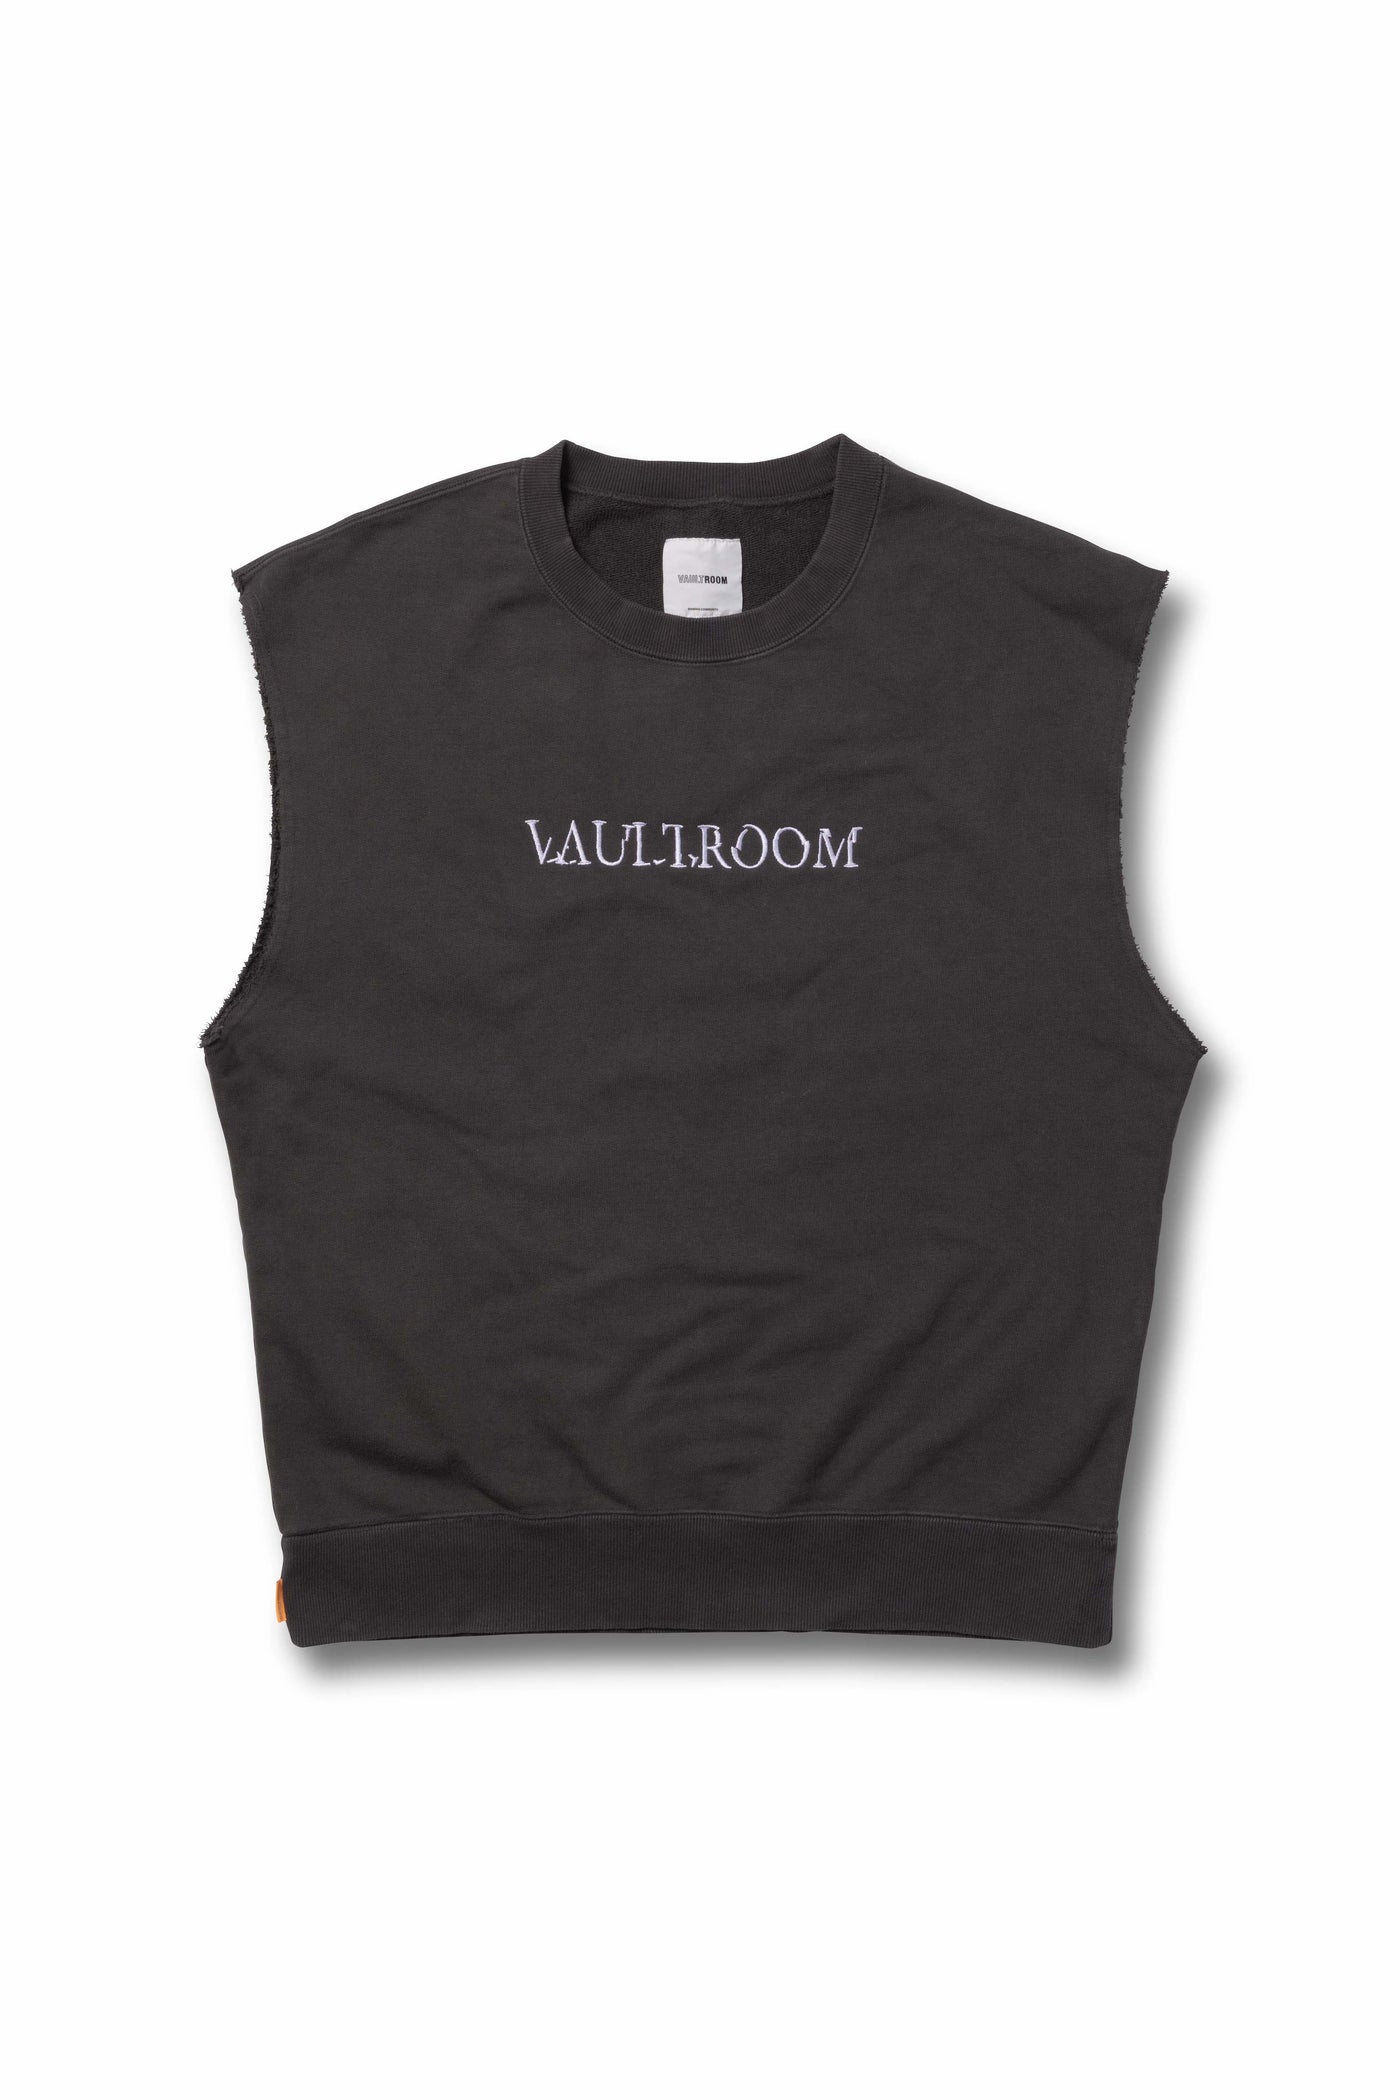 vaultroom CUTOFF VEST / CHARCOAL Lサイズボルトルームvault